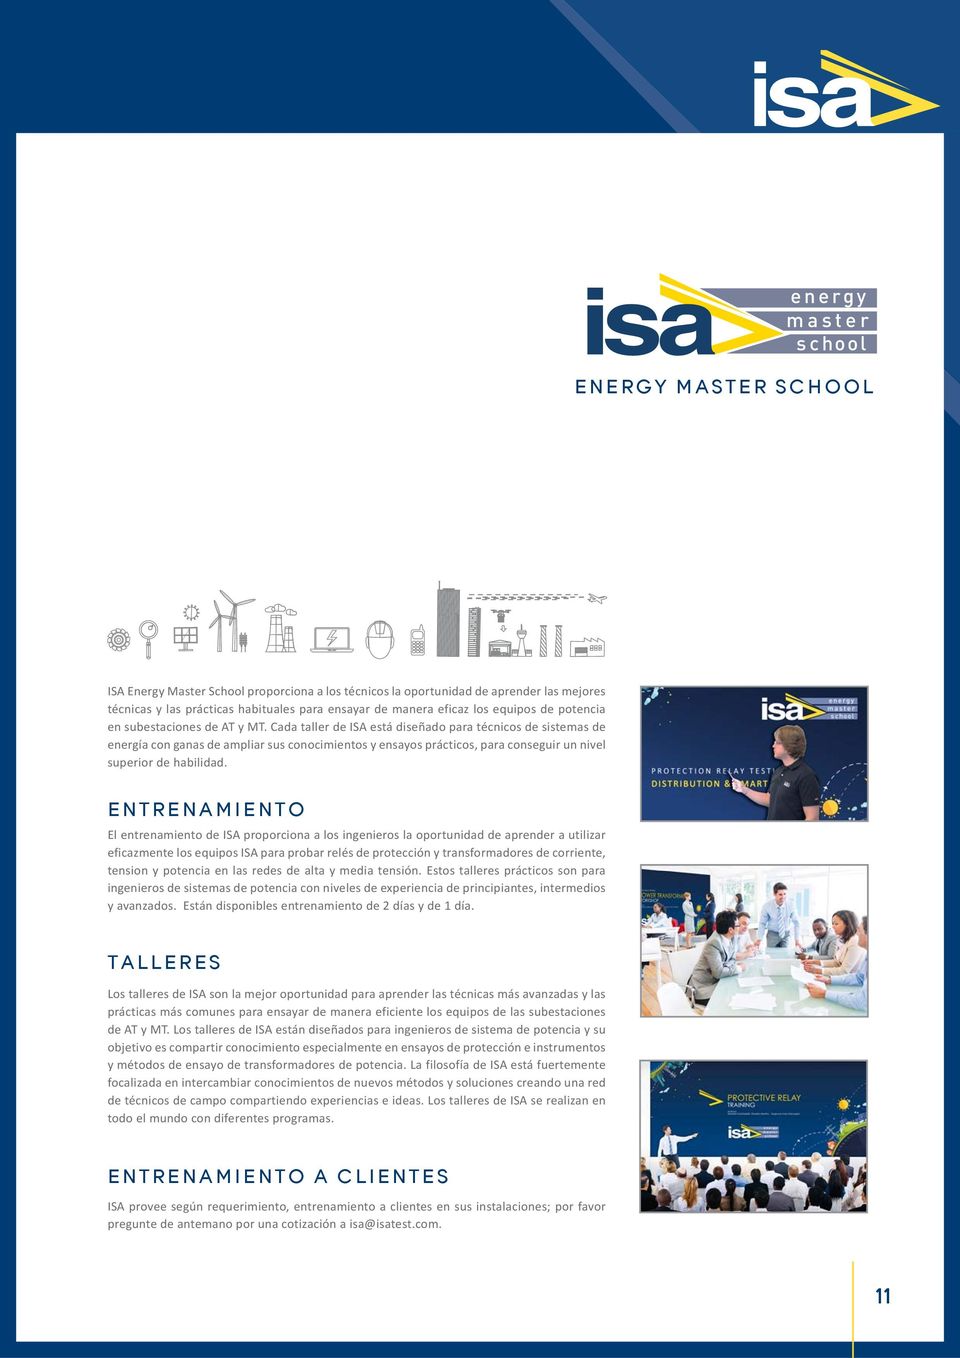 Cada taller de ISA está diseñado para técnicos de sistemas de energía con ganas de ampliar sus conocimientos y ensayos prácticos, para conseguir un nivel superior de habilidad.